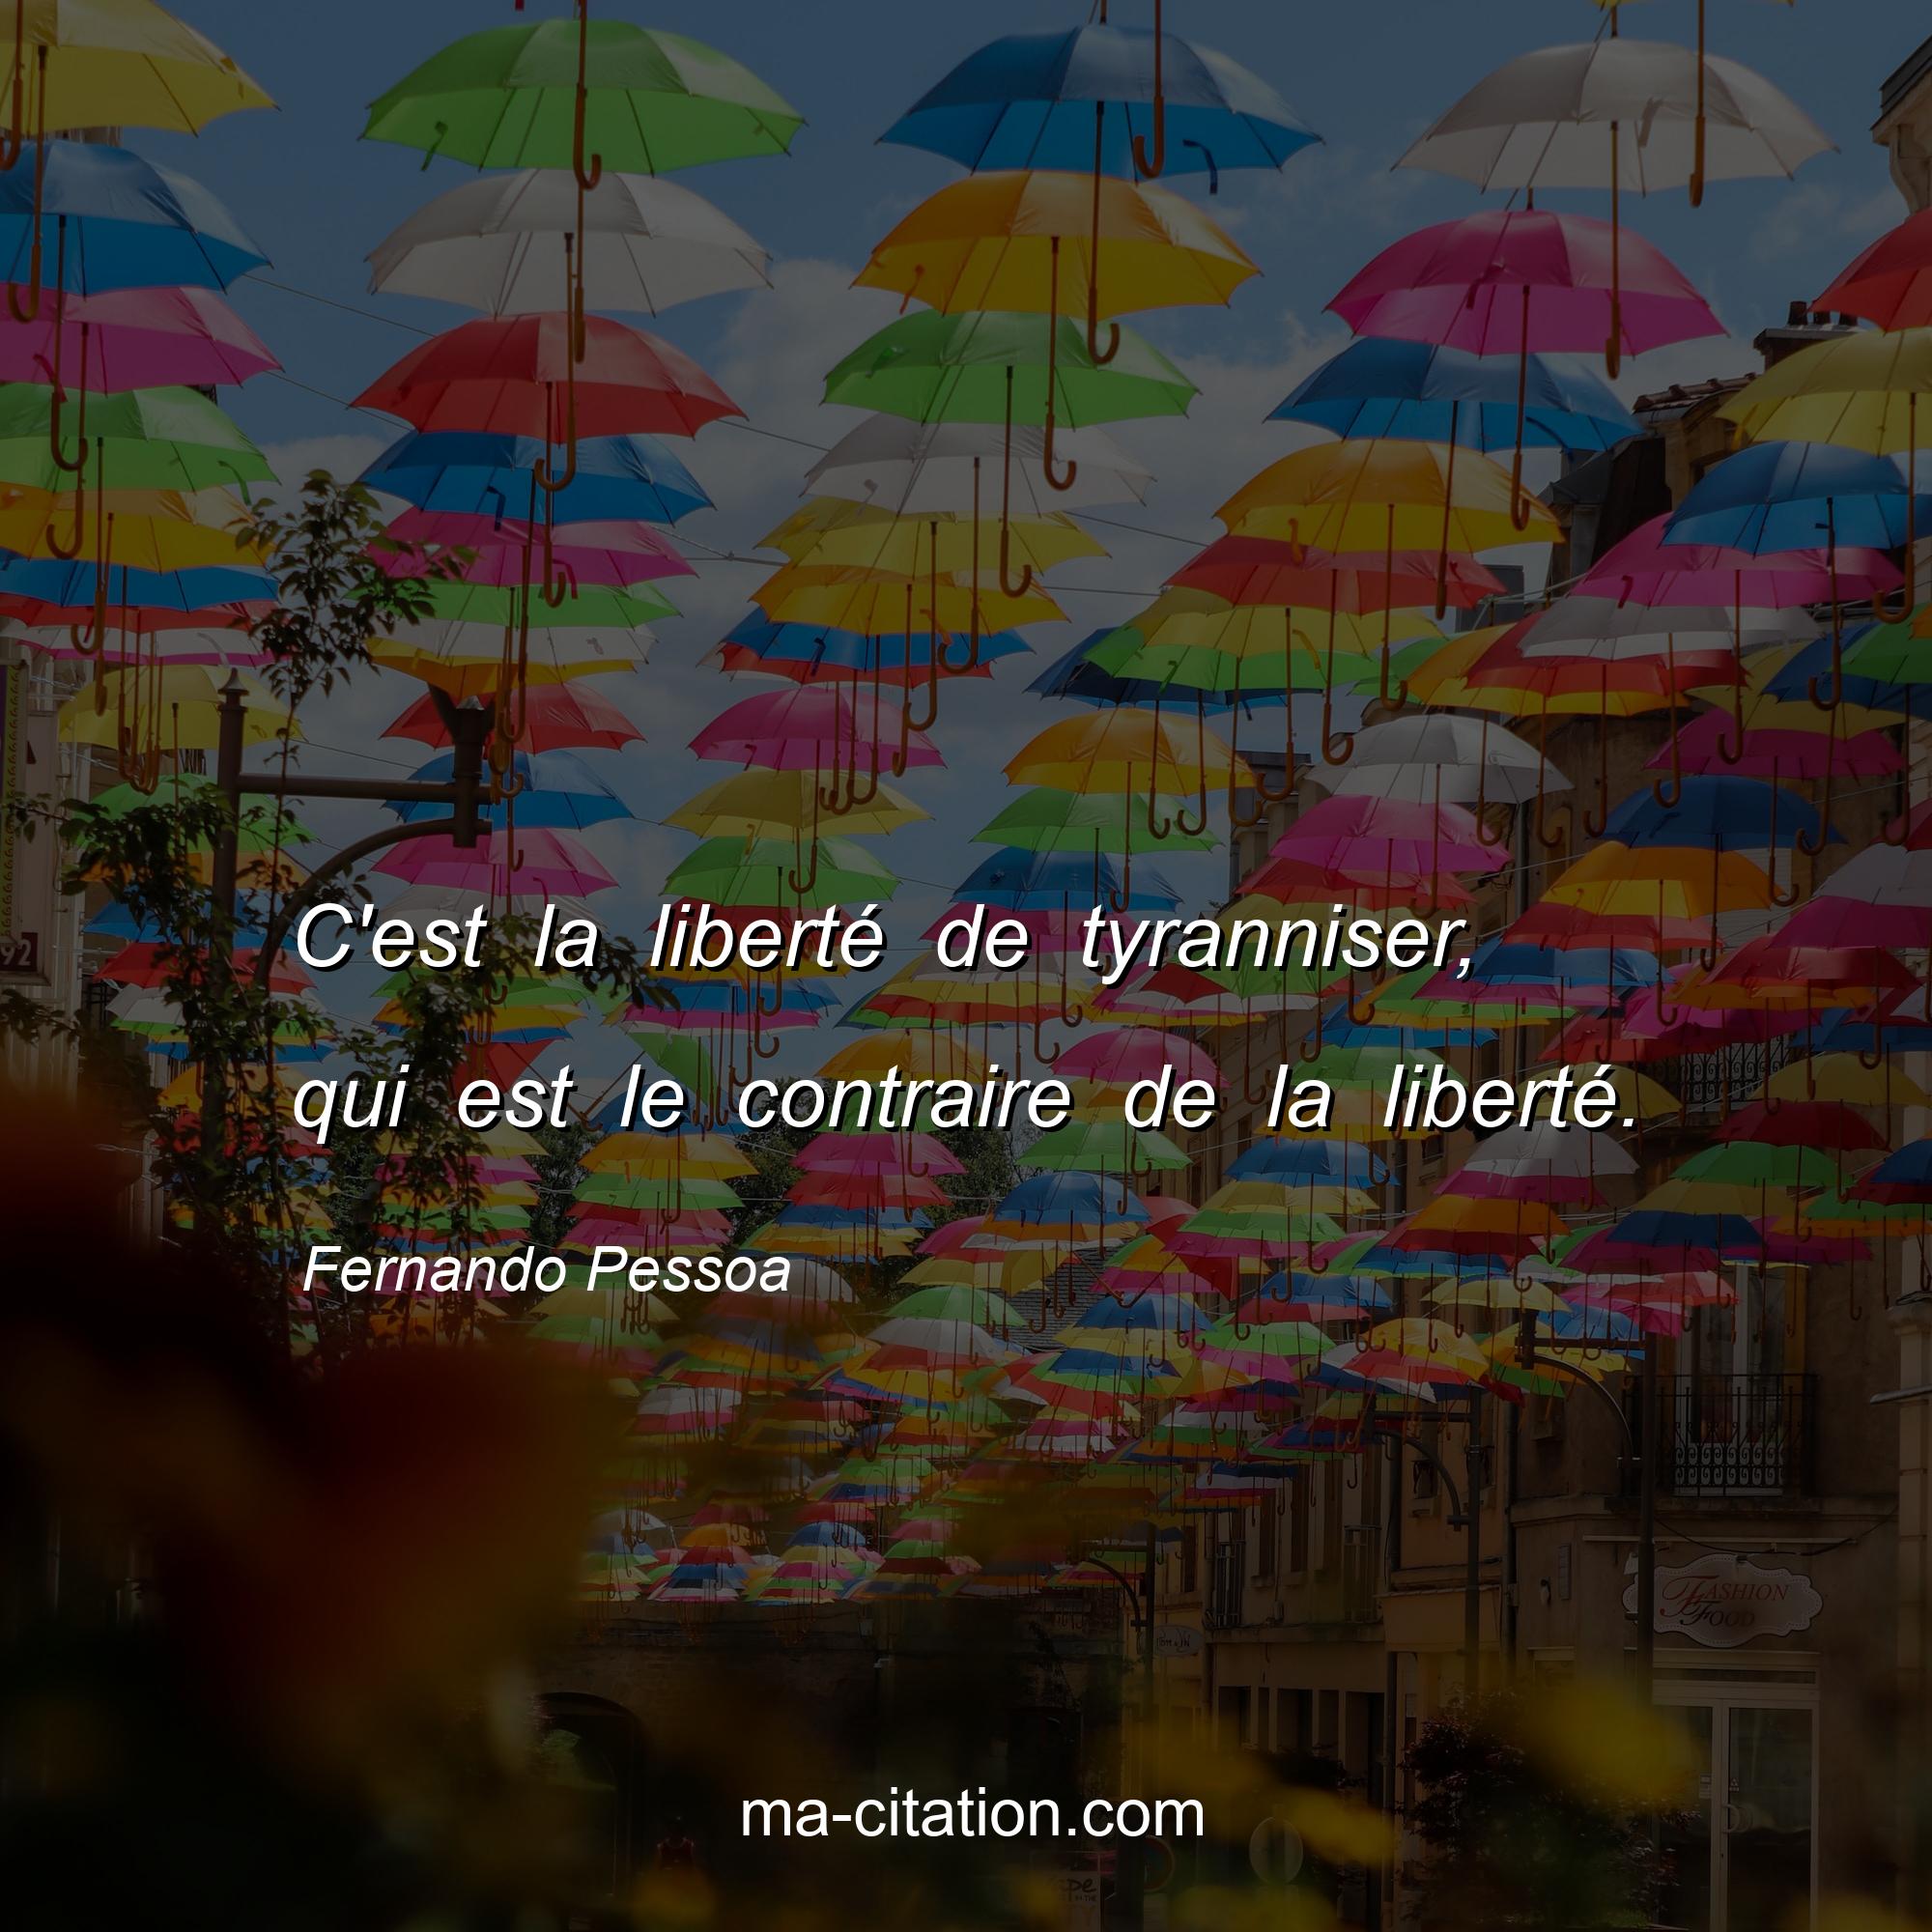 Fernando Pessoa : C'est la liberté de tyranniser, qui est le contraire de la liberté.